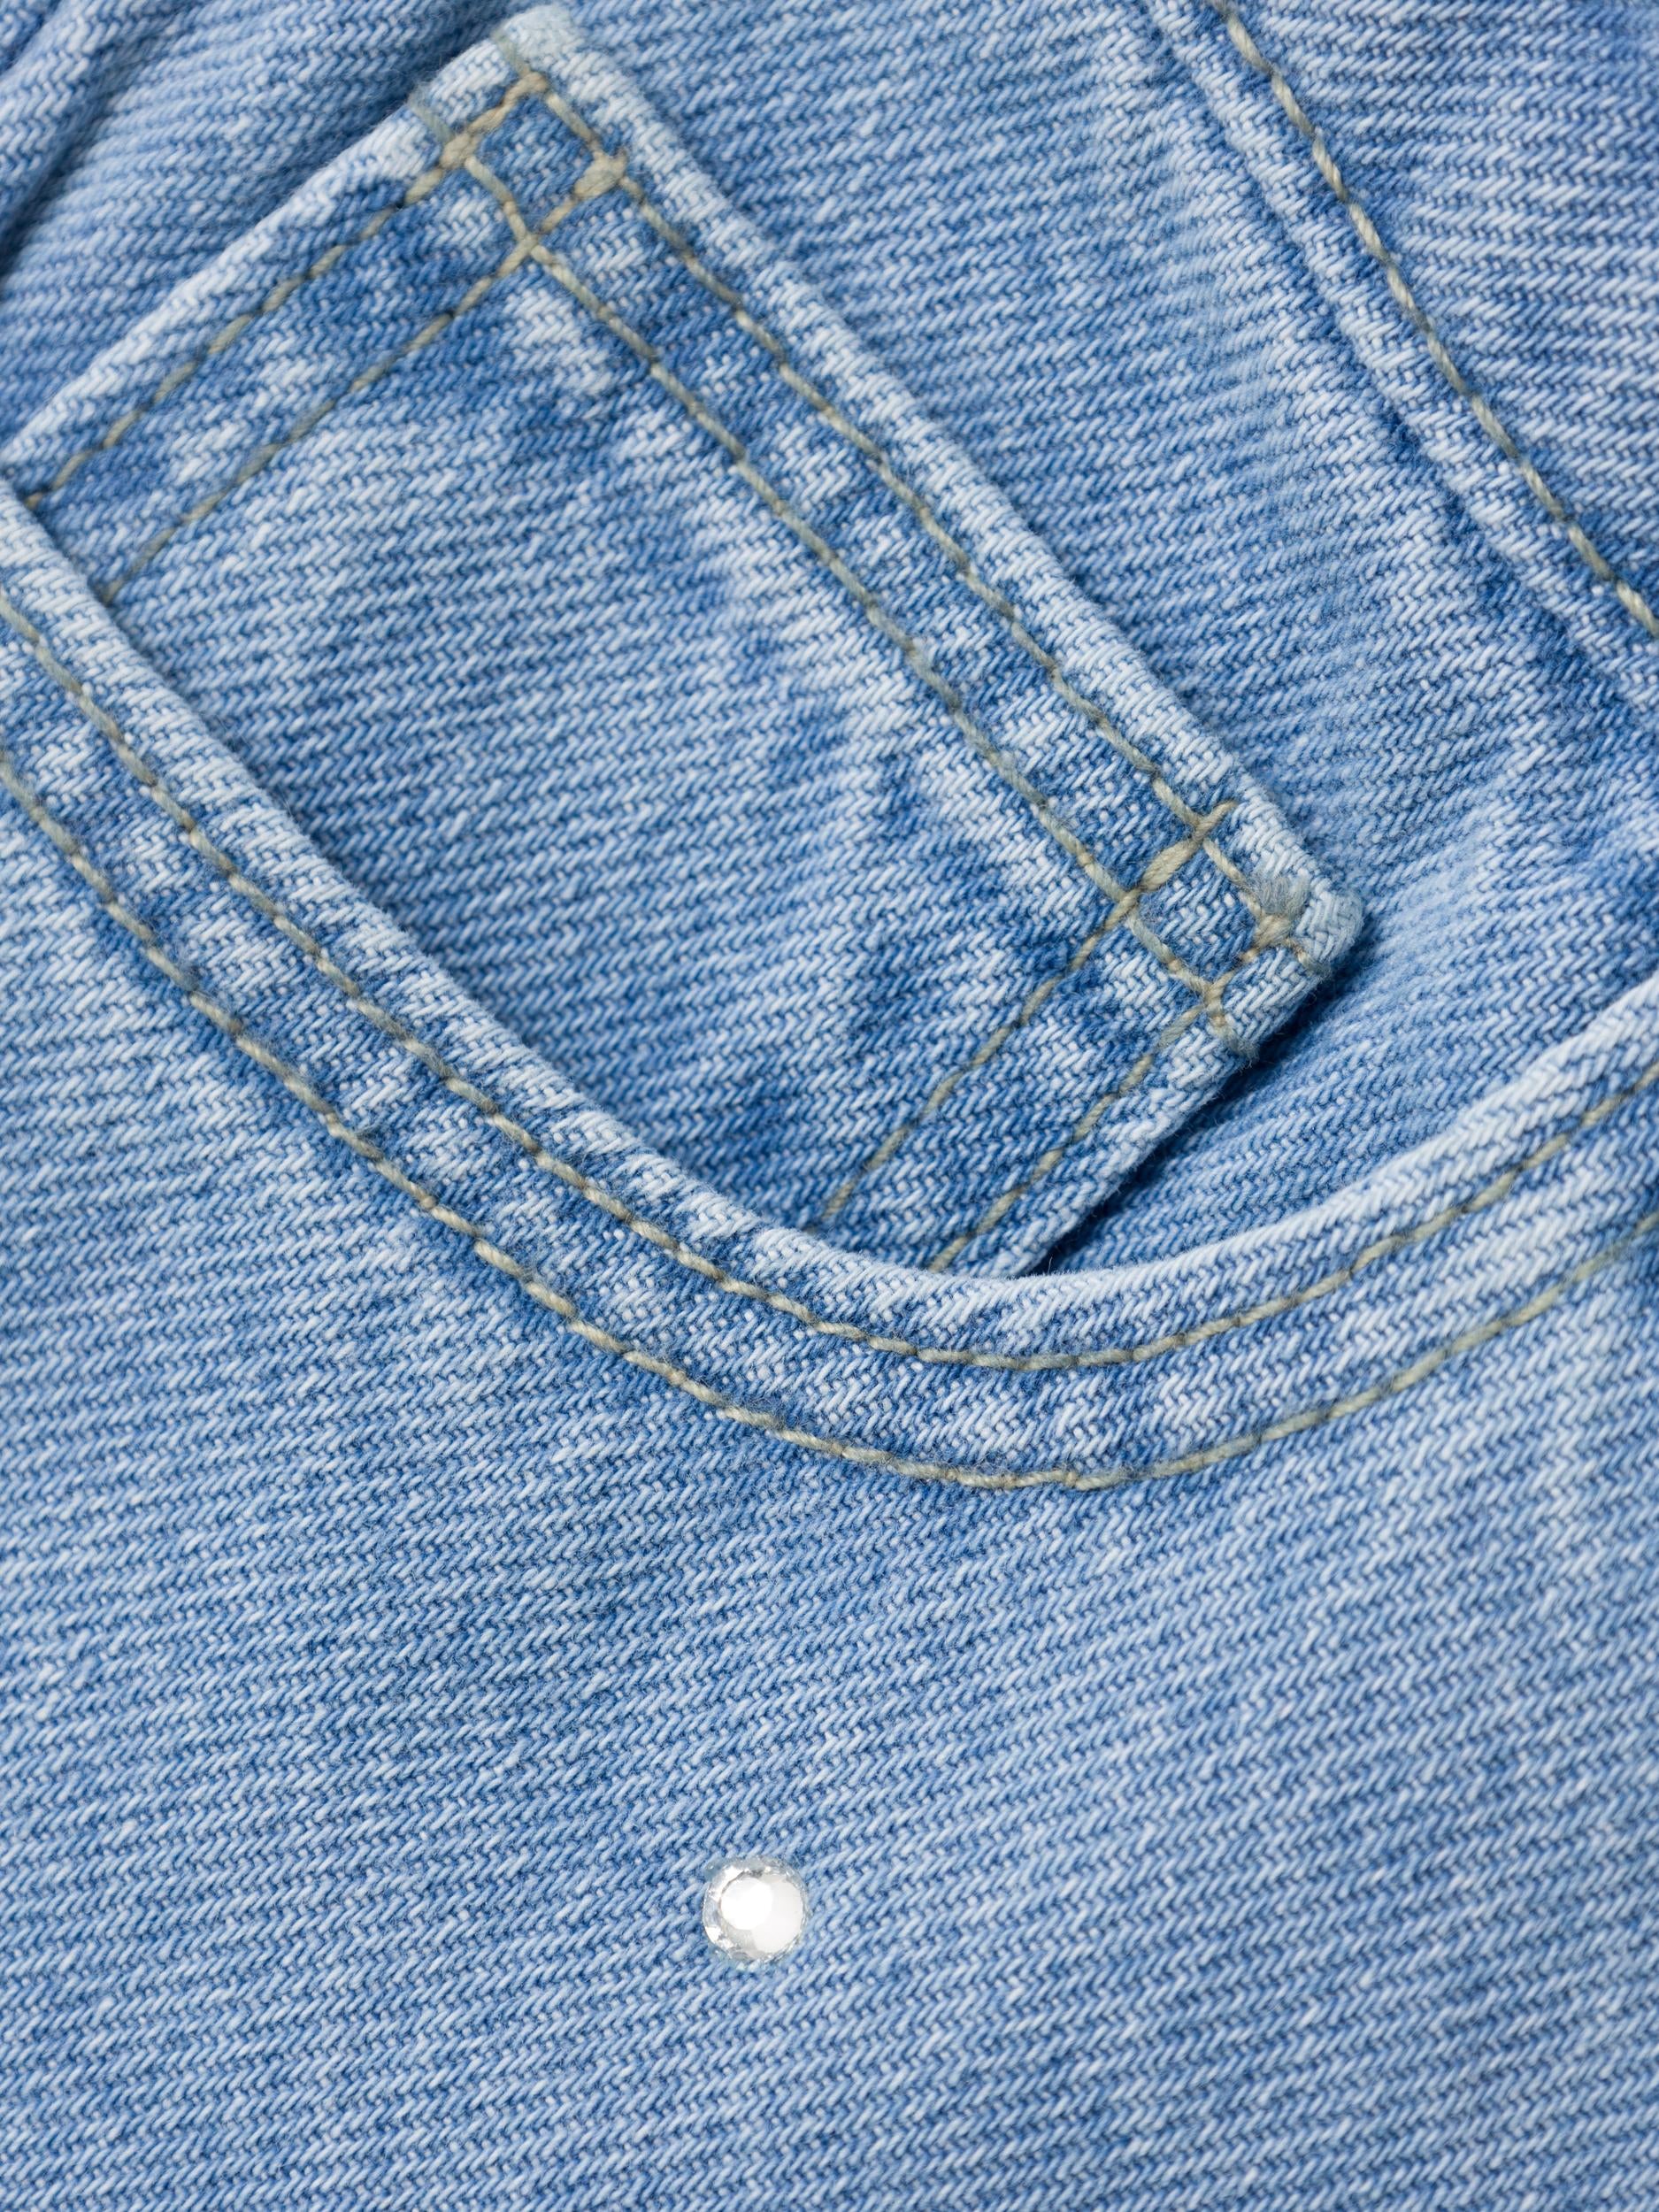 Girl's Rose Straight Jeans 3366-Light Blue Denim-Pocket View